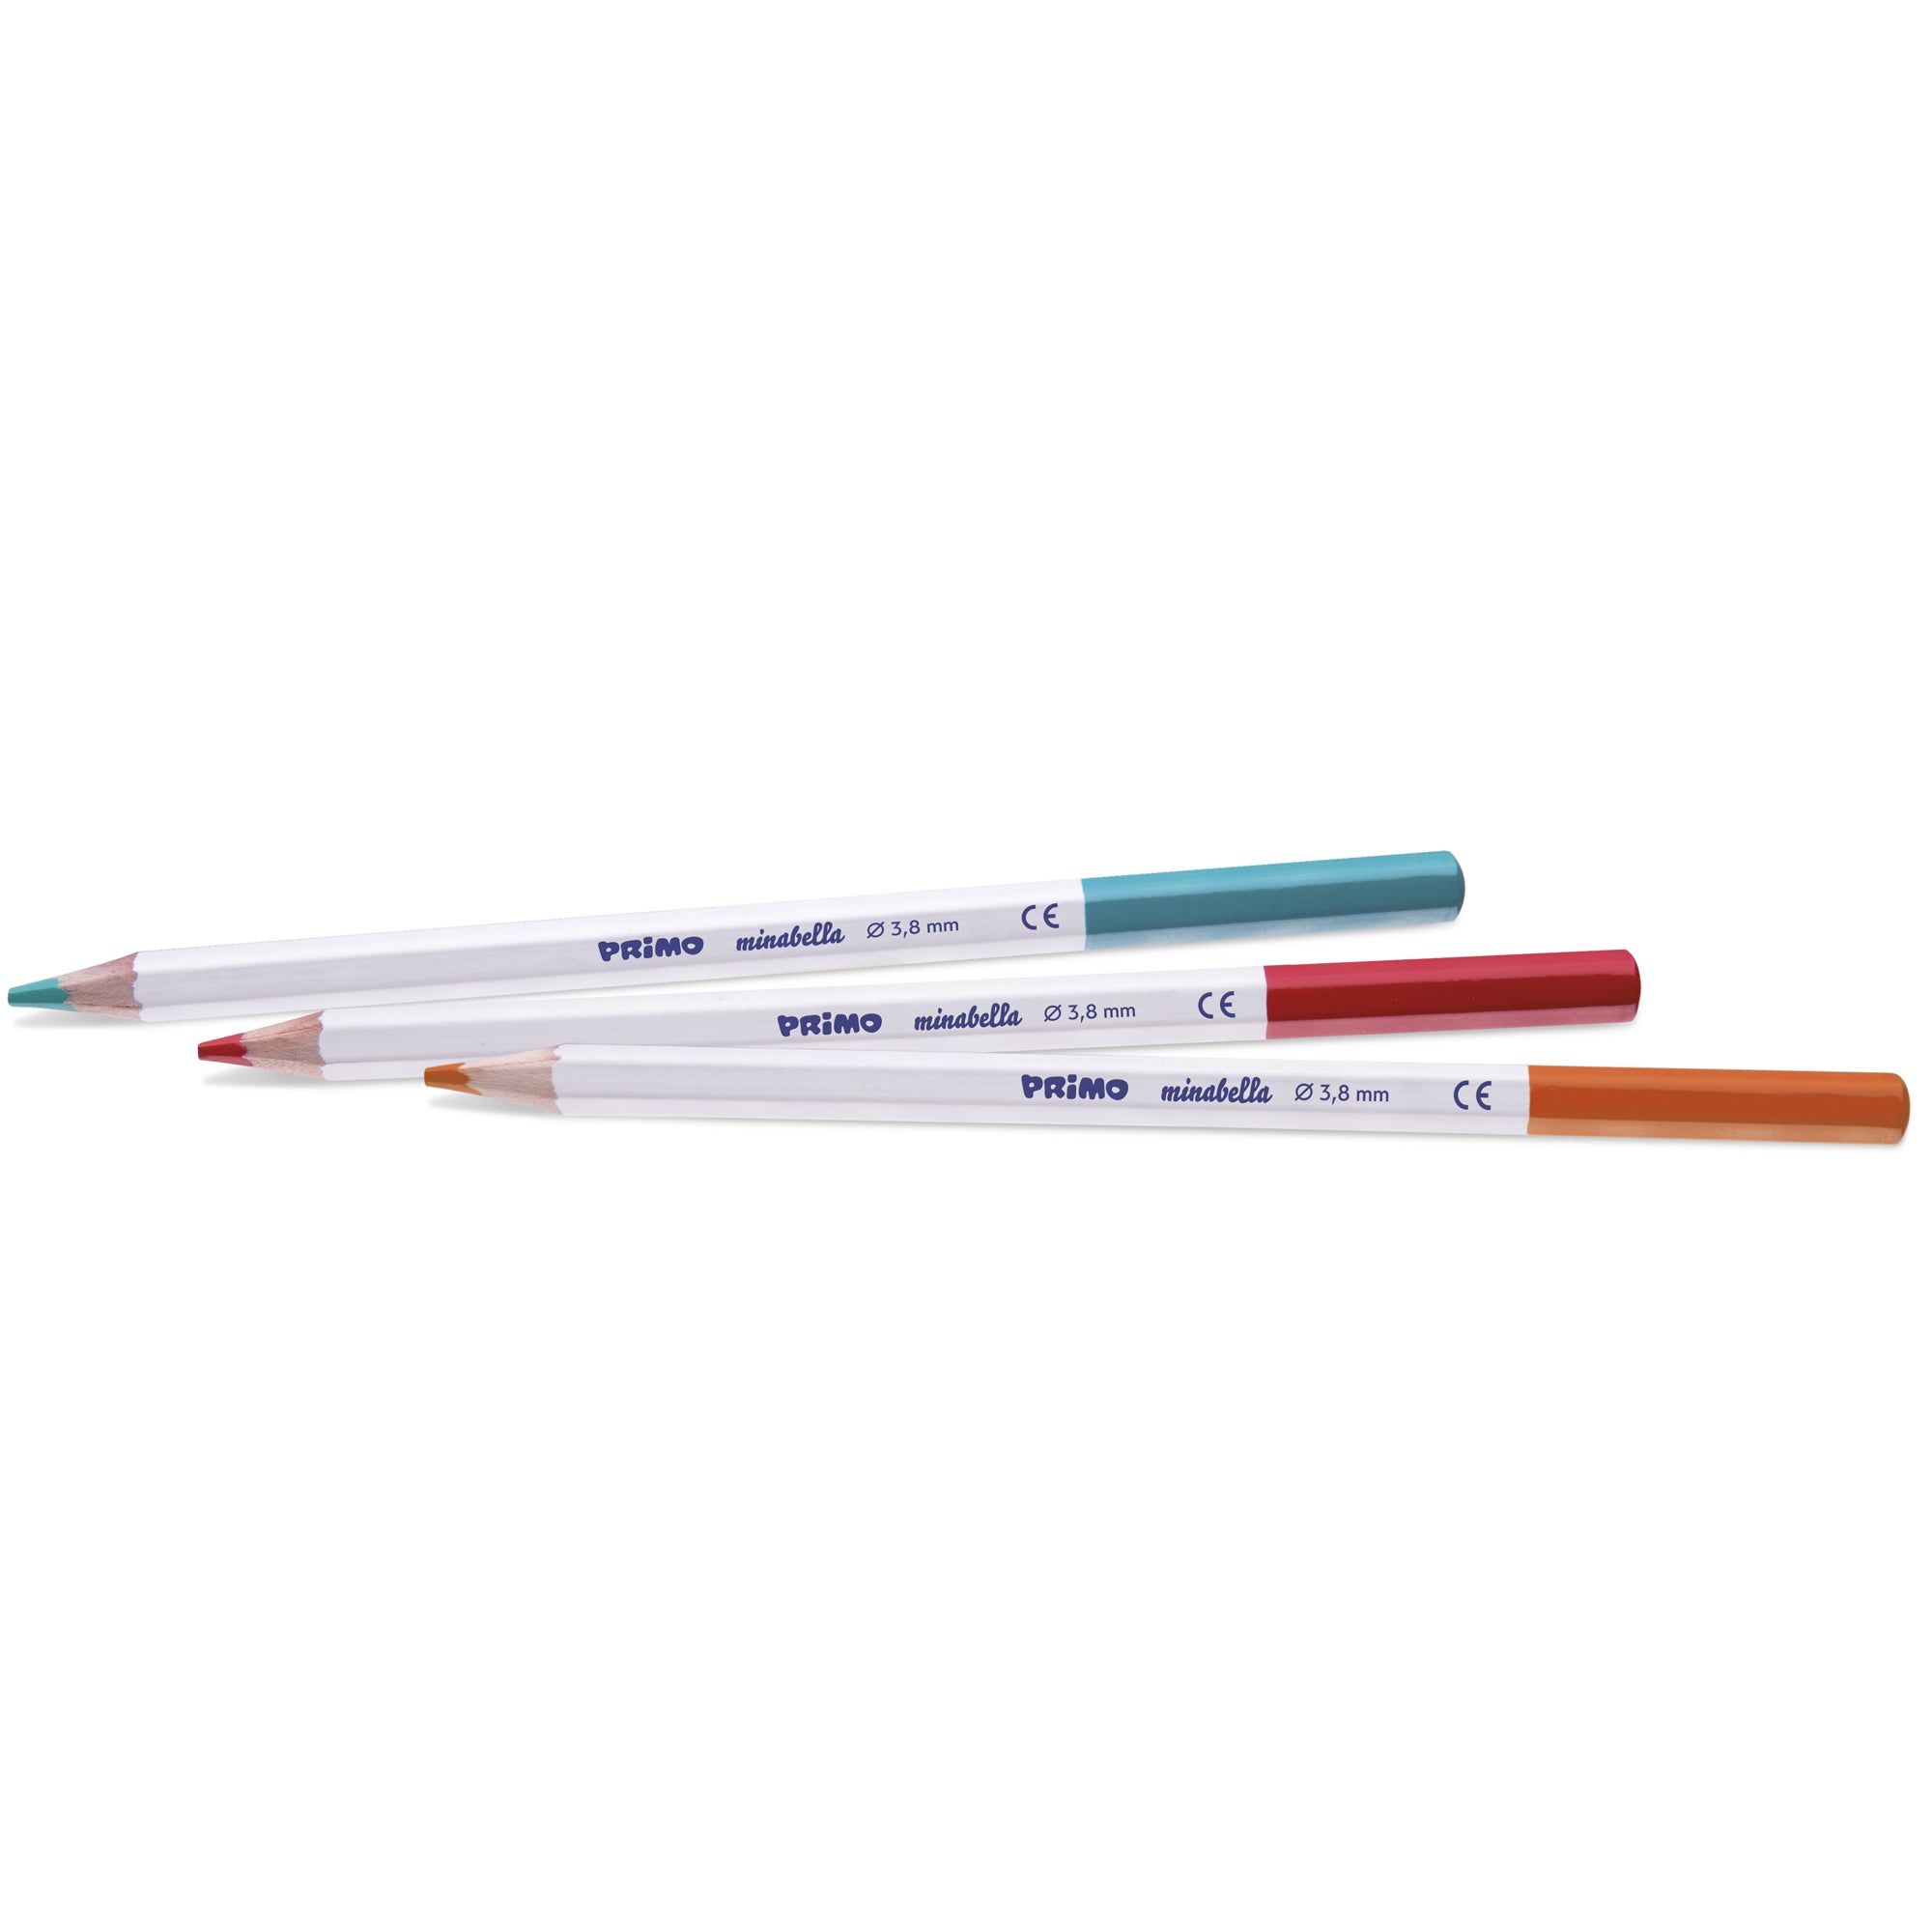 primo-morocolor-astuccio-12-matite-colorate-diam-3-8mm-minabella-primo